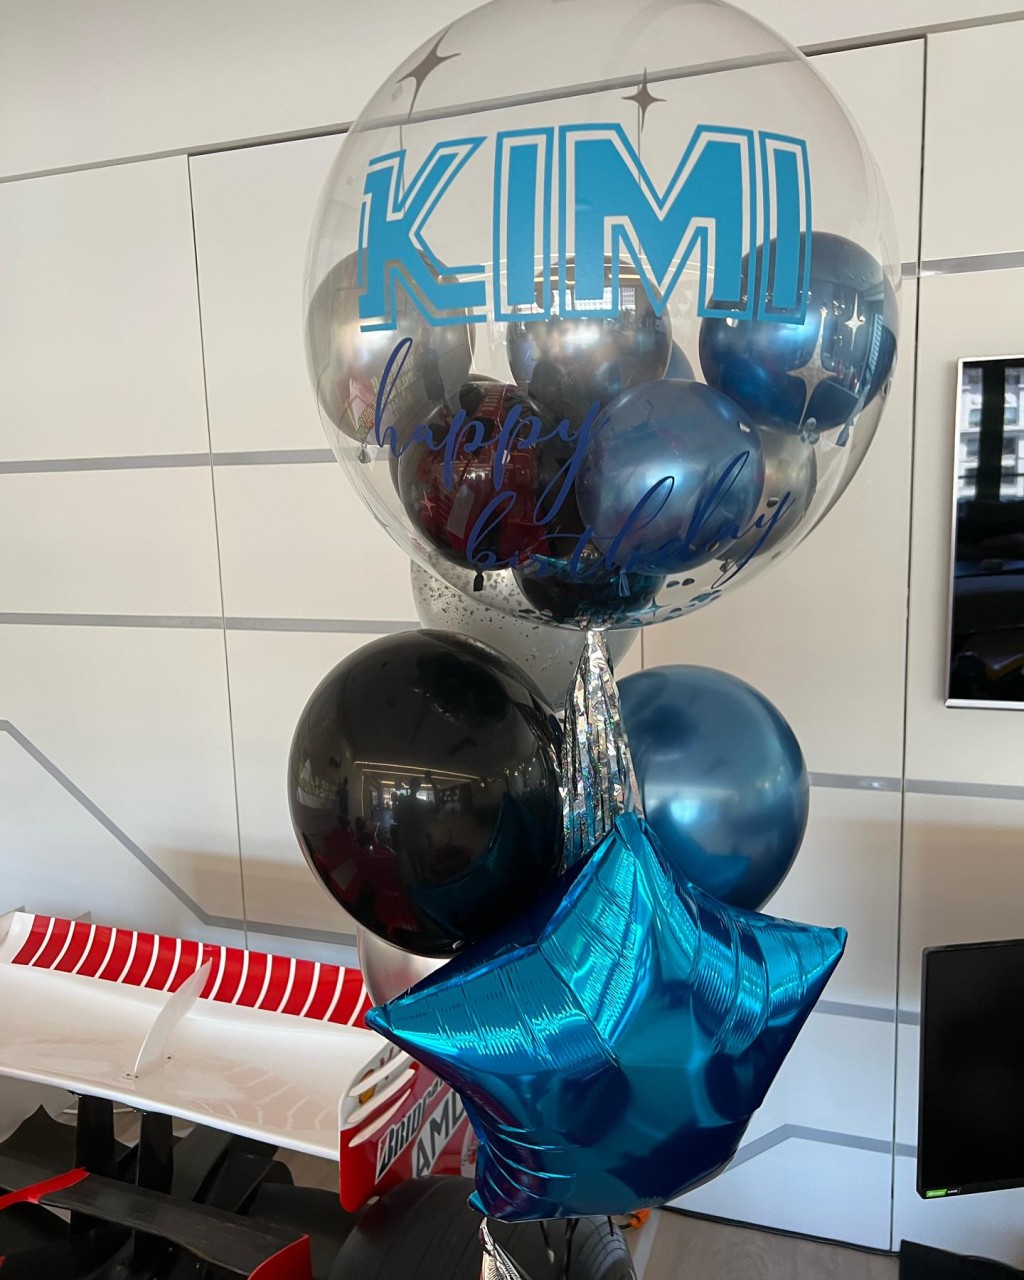 林志颖在家中为大仔Kimi庆祝生日。